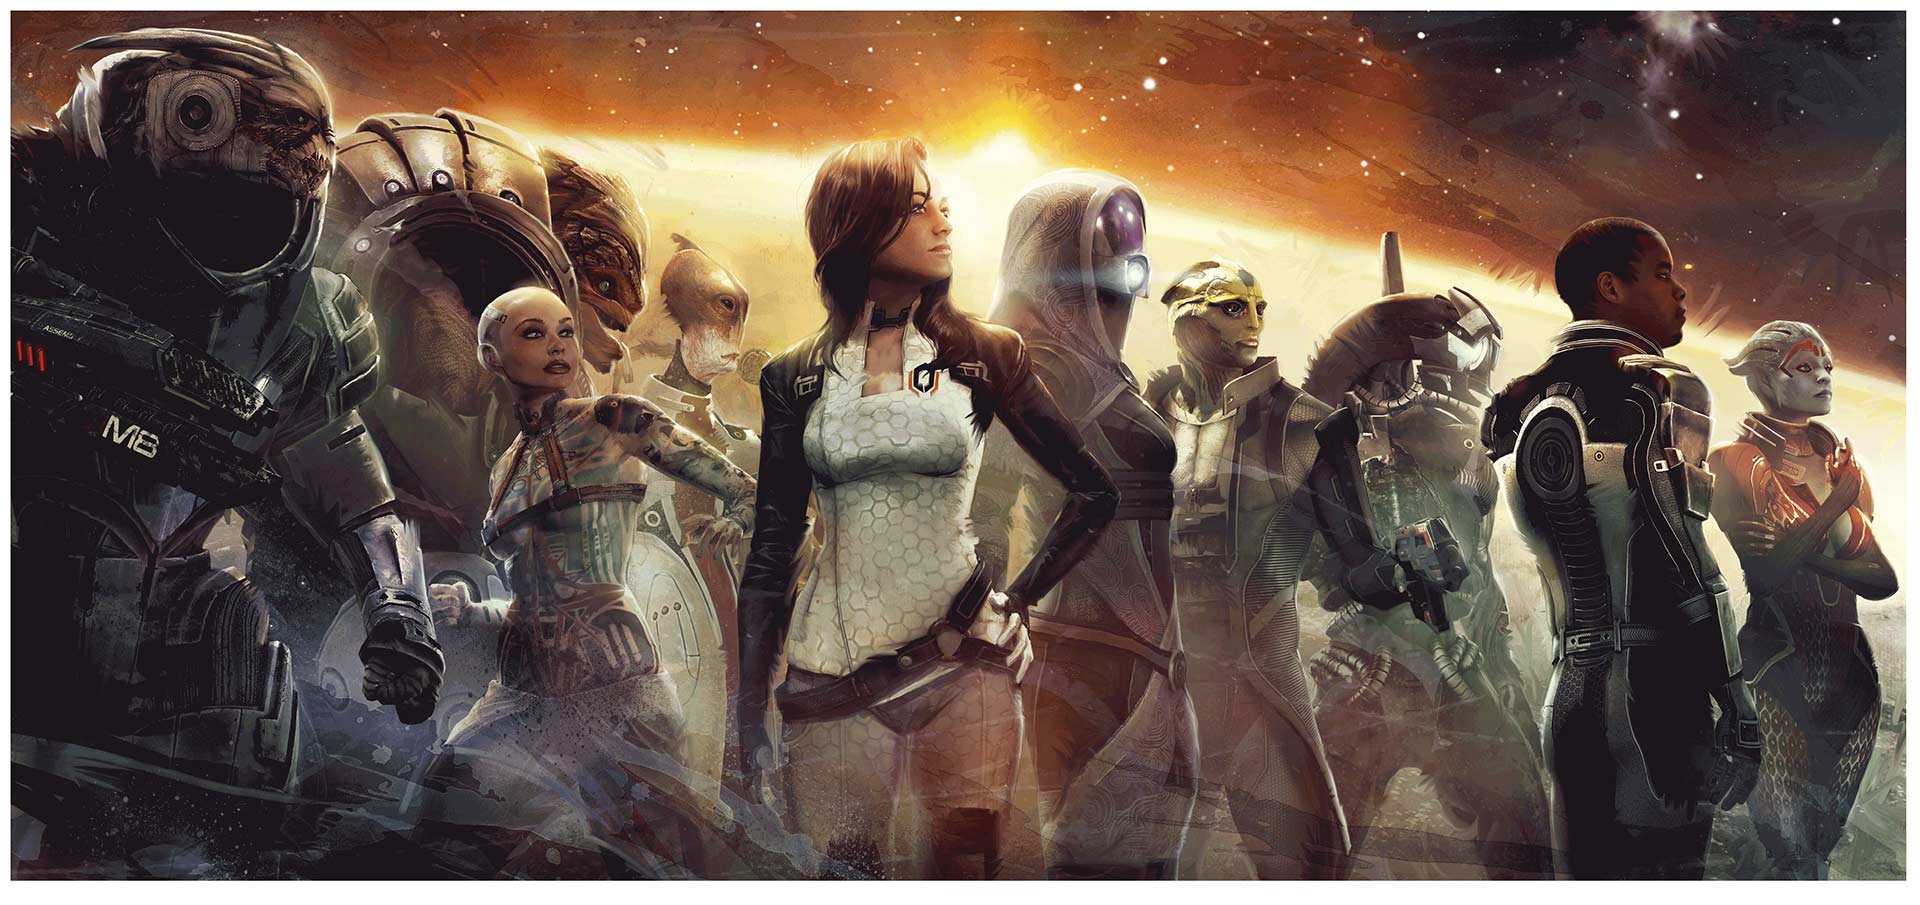 Immagine pubblicata in relazione al seguente contenuto: Bioware e EA pubblicano il teaser trailer di Mass Effect Andromeda | Nome immagine: news23332_Mass-Effect-Image_5.jpg